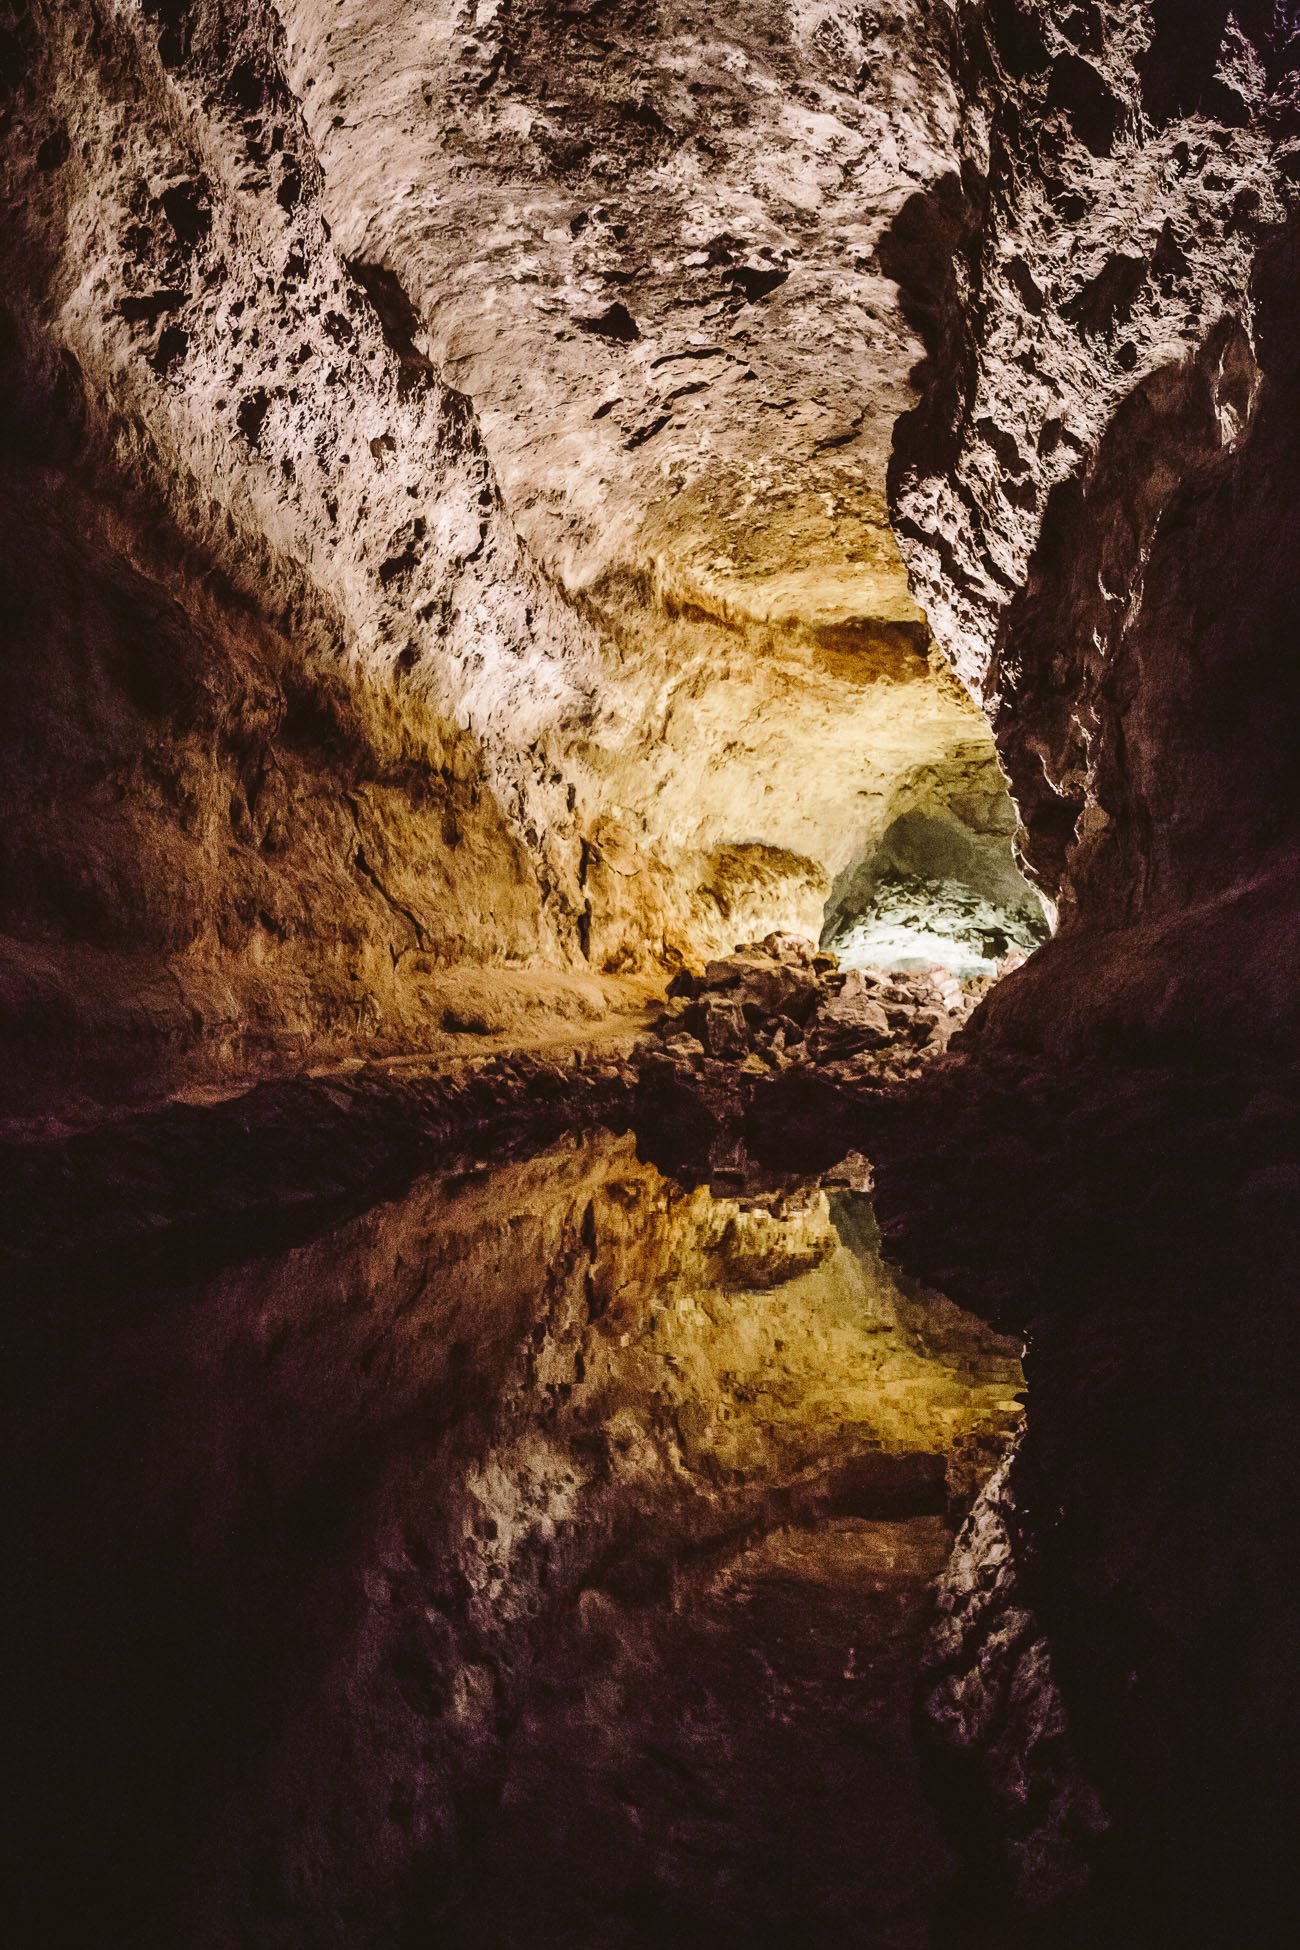 Cueva de los Verdes by César Manrique in Lanzarote